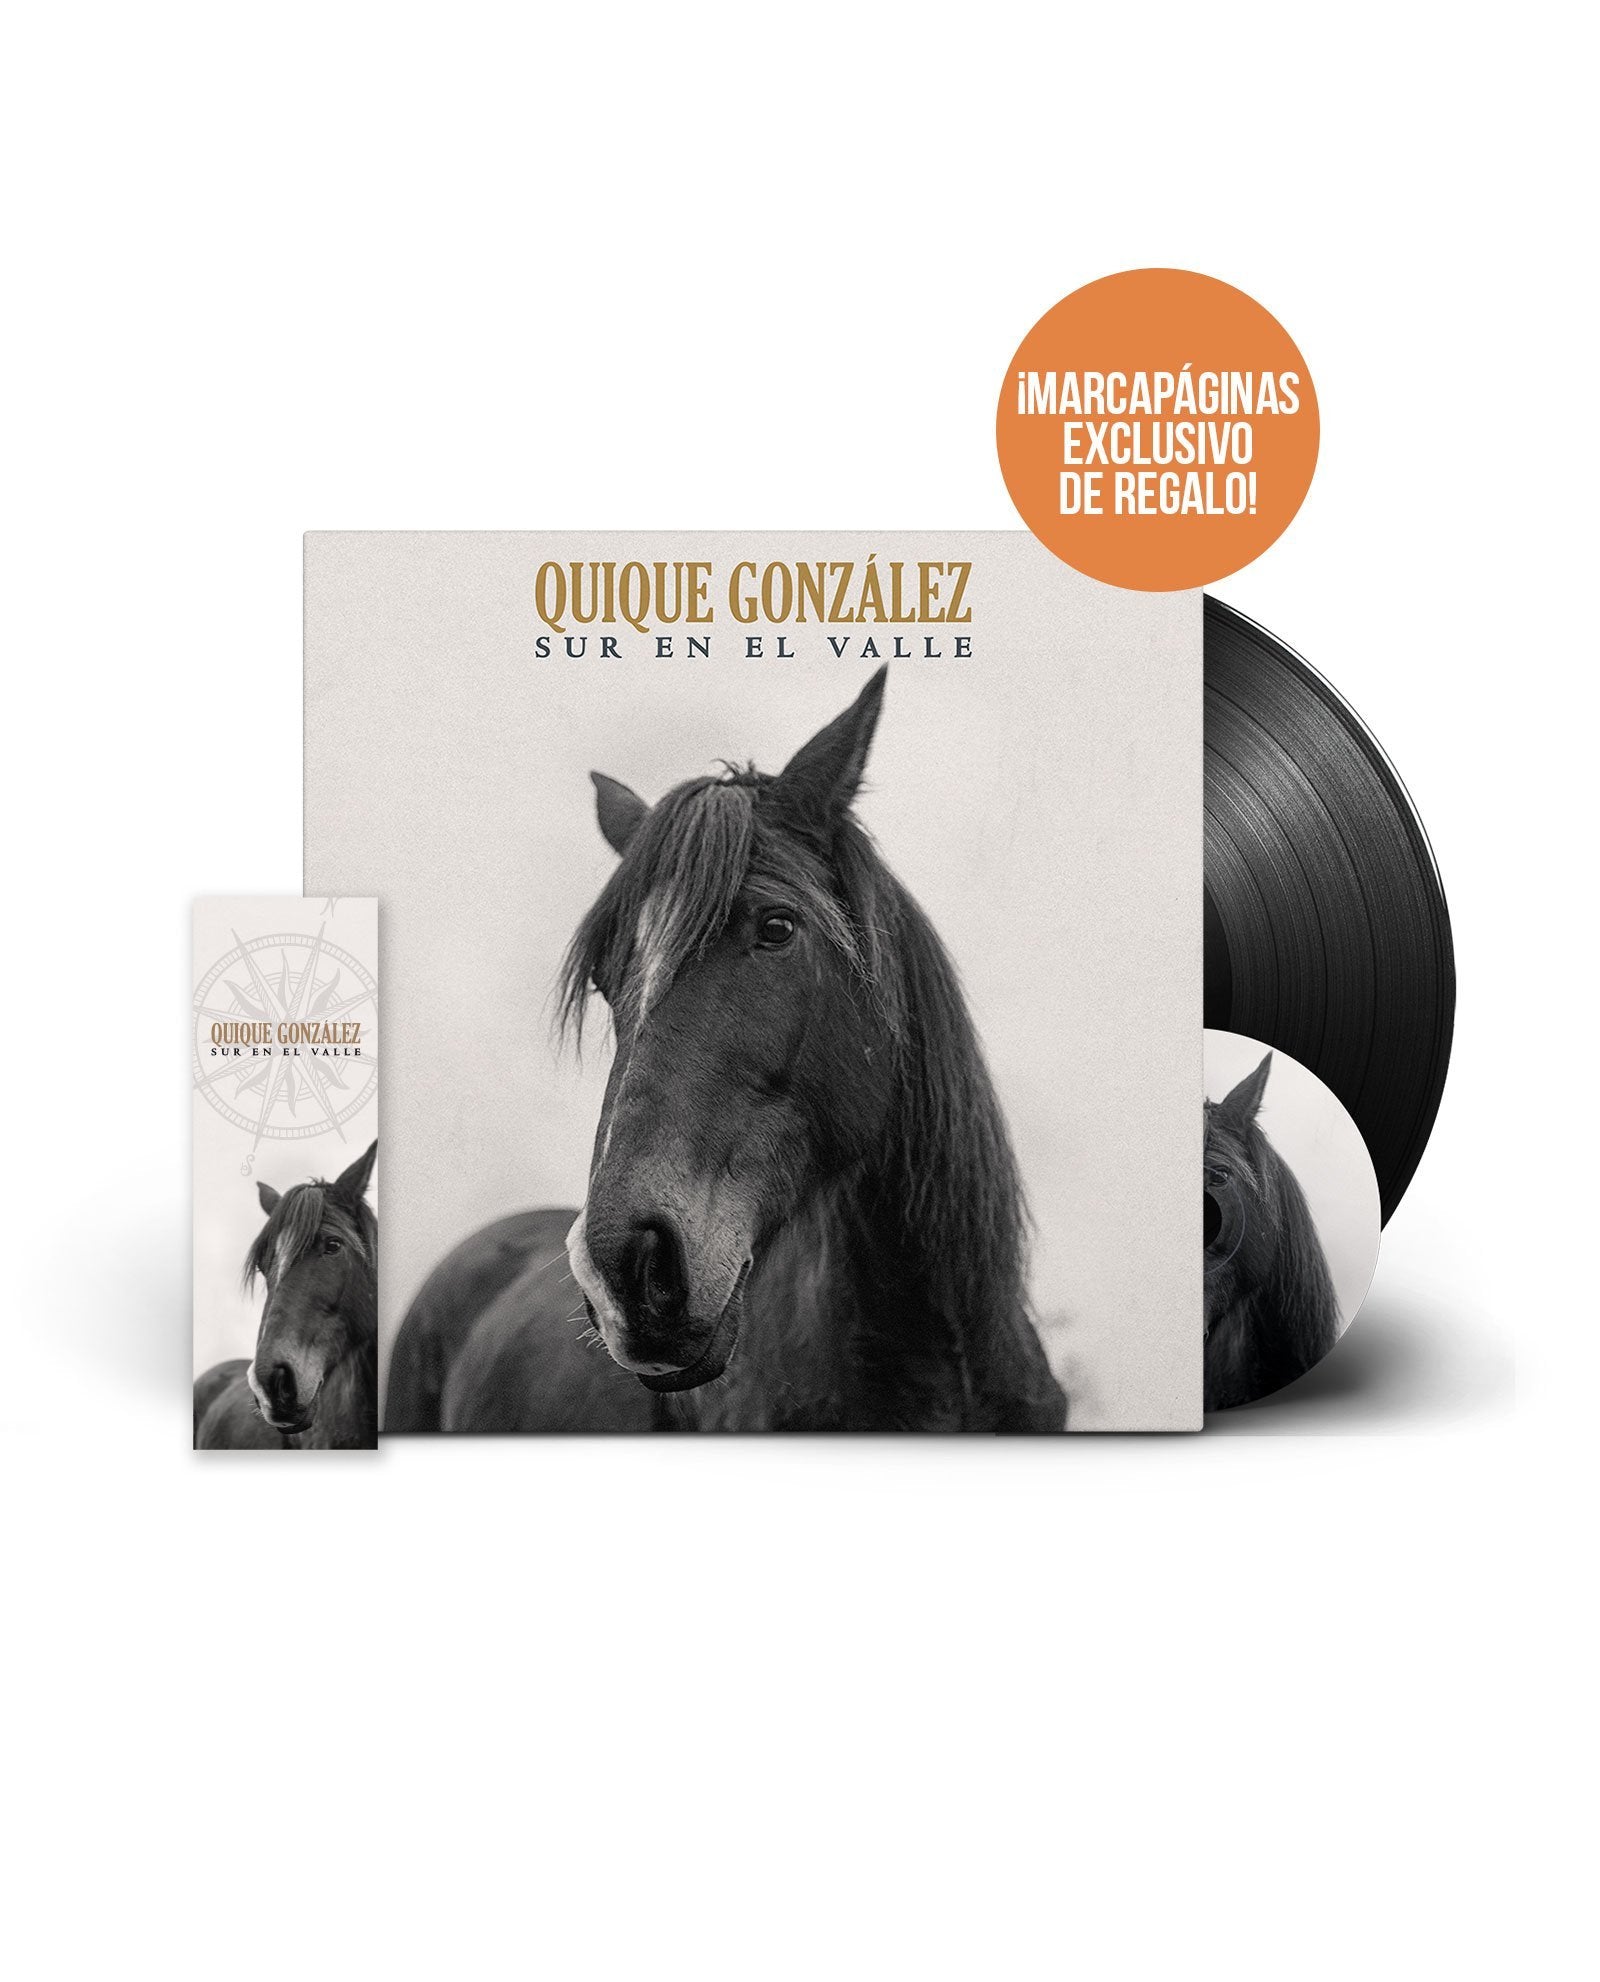 VINILO 12" + CD SUR EN EL VALLE + MARCAPÁGINAS EXCLUSIVO DE REGALO - Quique González - Rocktud - Quique González